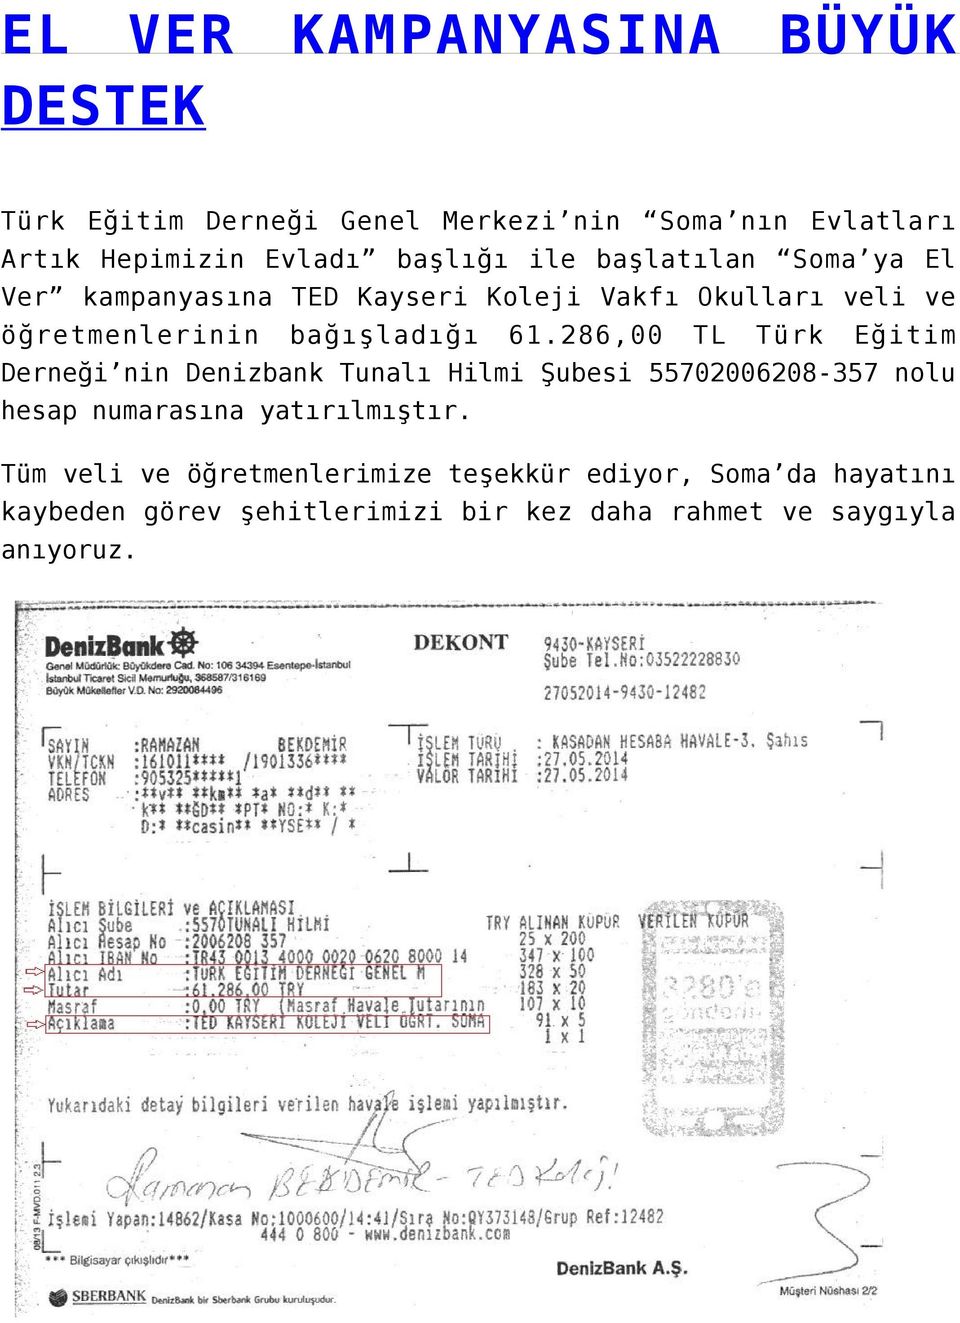 286,00 TL Türk Eğitim Derneği nin Denizbank Tunalı Hilmi Şubesi 55702006208-357 nolu hesap numarasına yatırılmıştır.